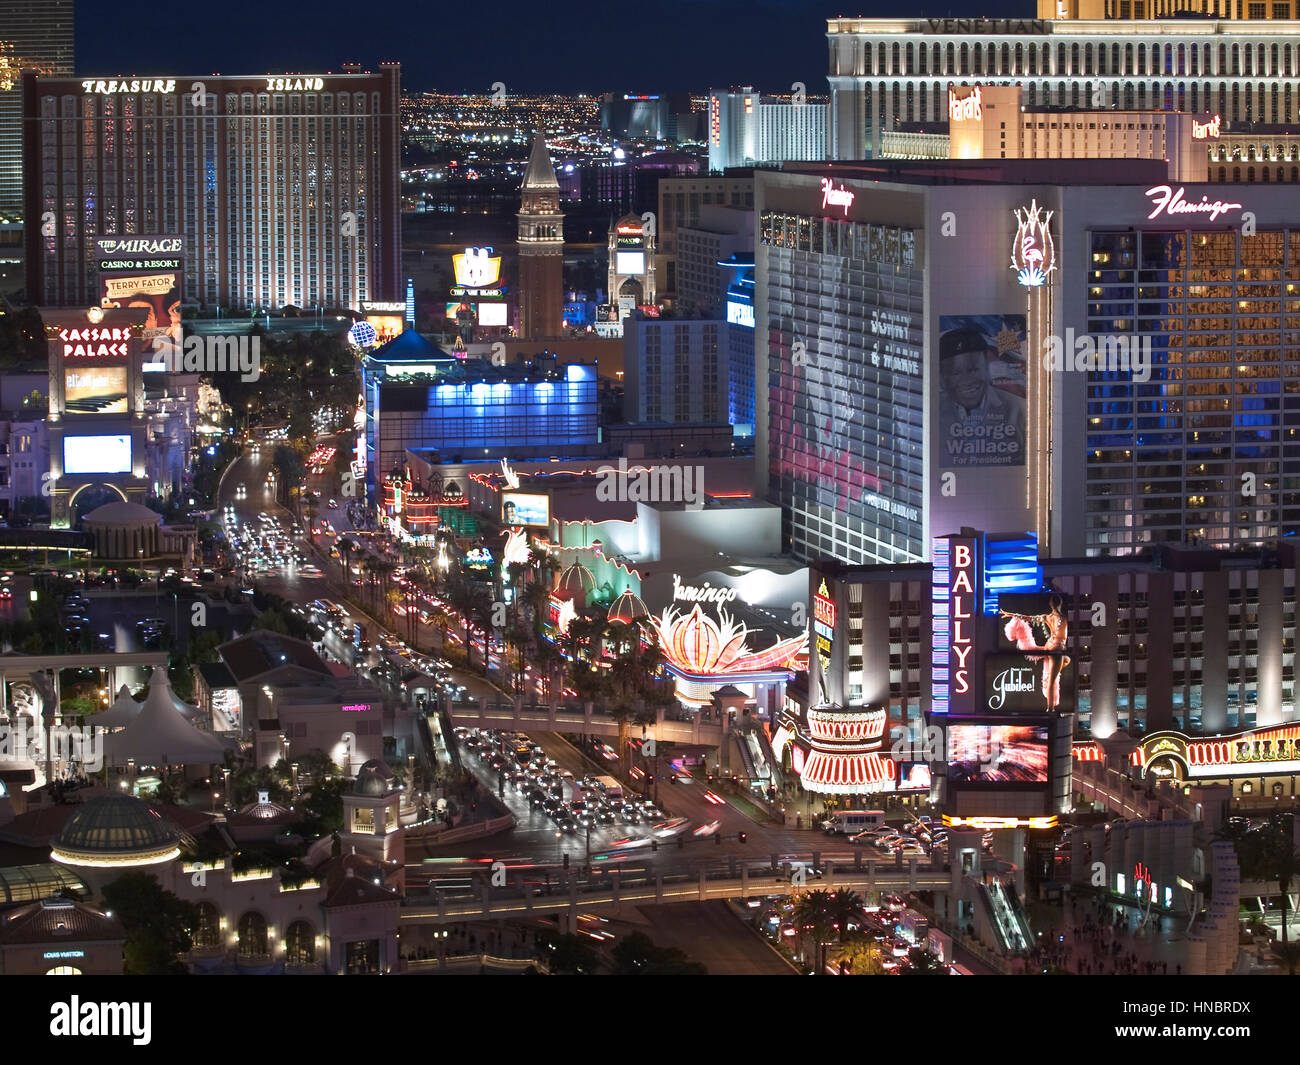 Las Vegas, Nevada, Stati Uniti d'America - 6 Ottobre 2011: Inizio della luce della sera presso l'Isola del Tesoro, il Flamingo e altri resort sulla Strip di Las Vegas. Foto Stock